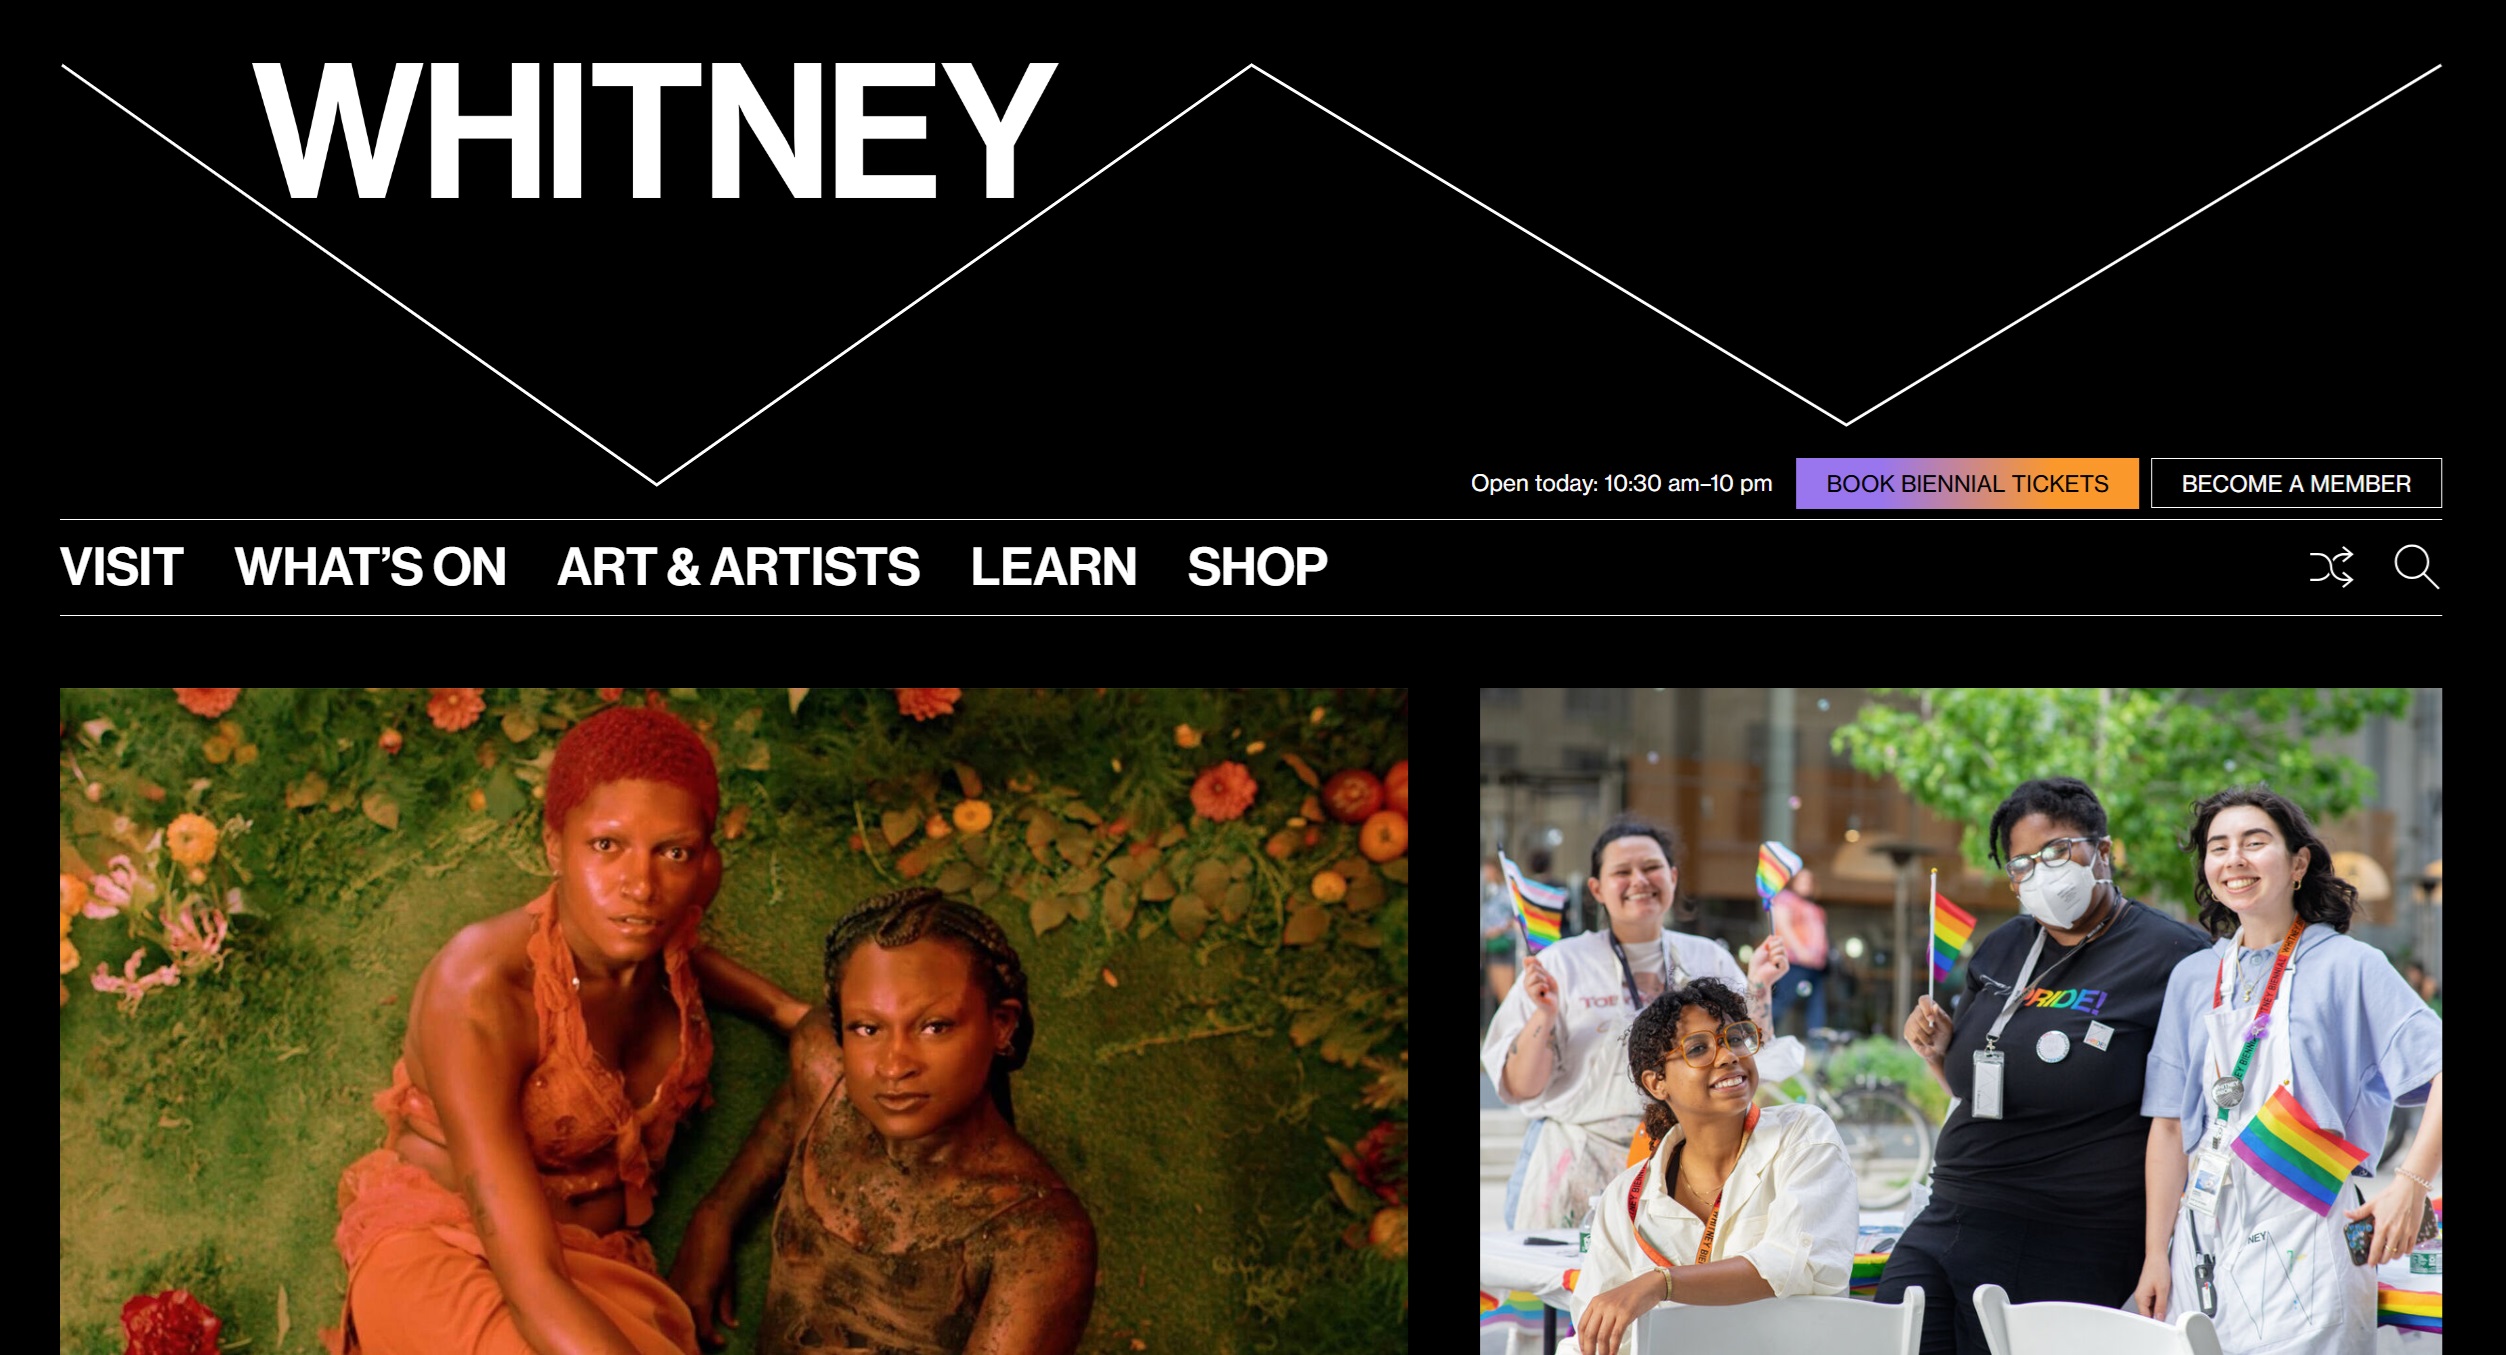 Parte della homepage del Whitney Museum of American Arts